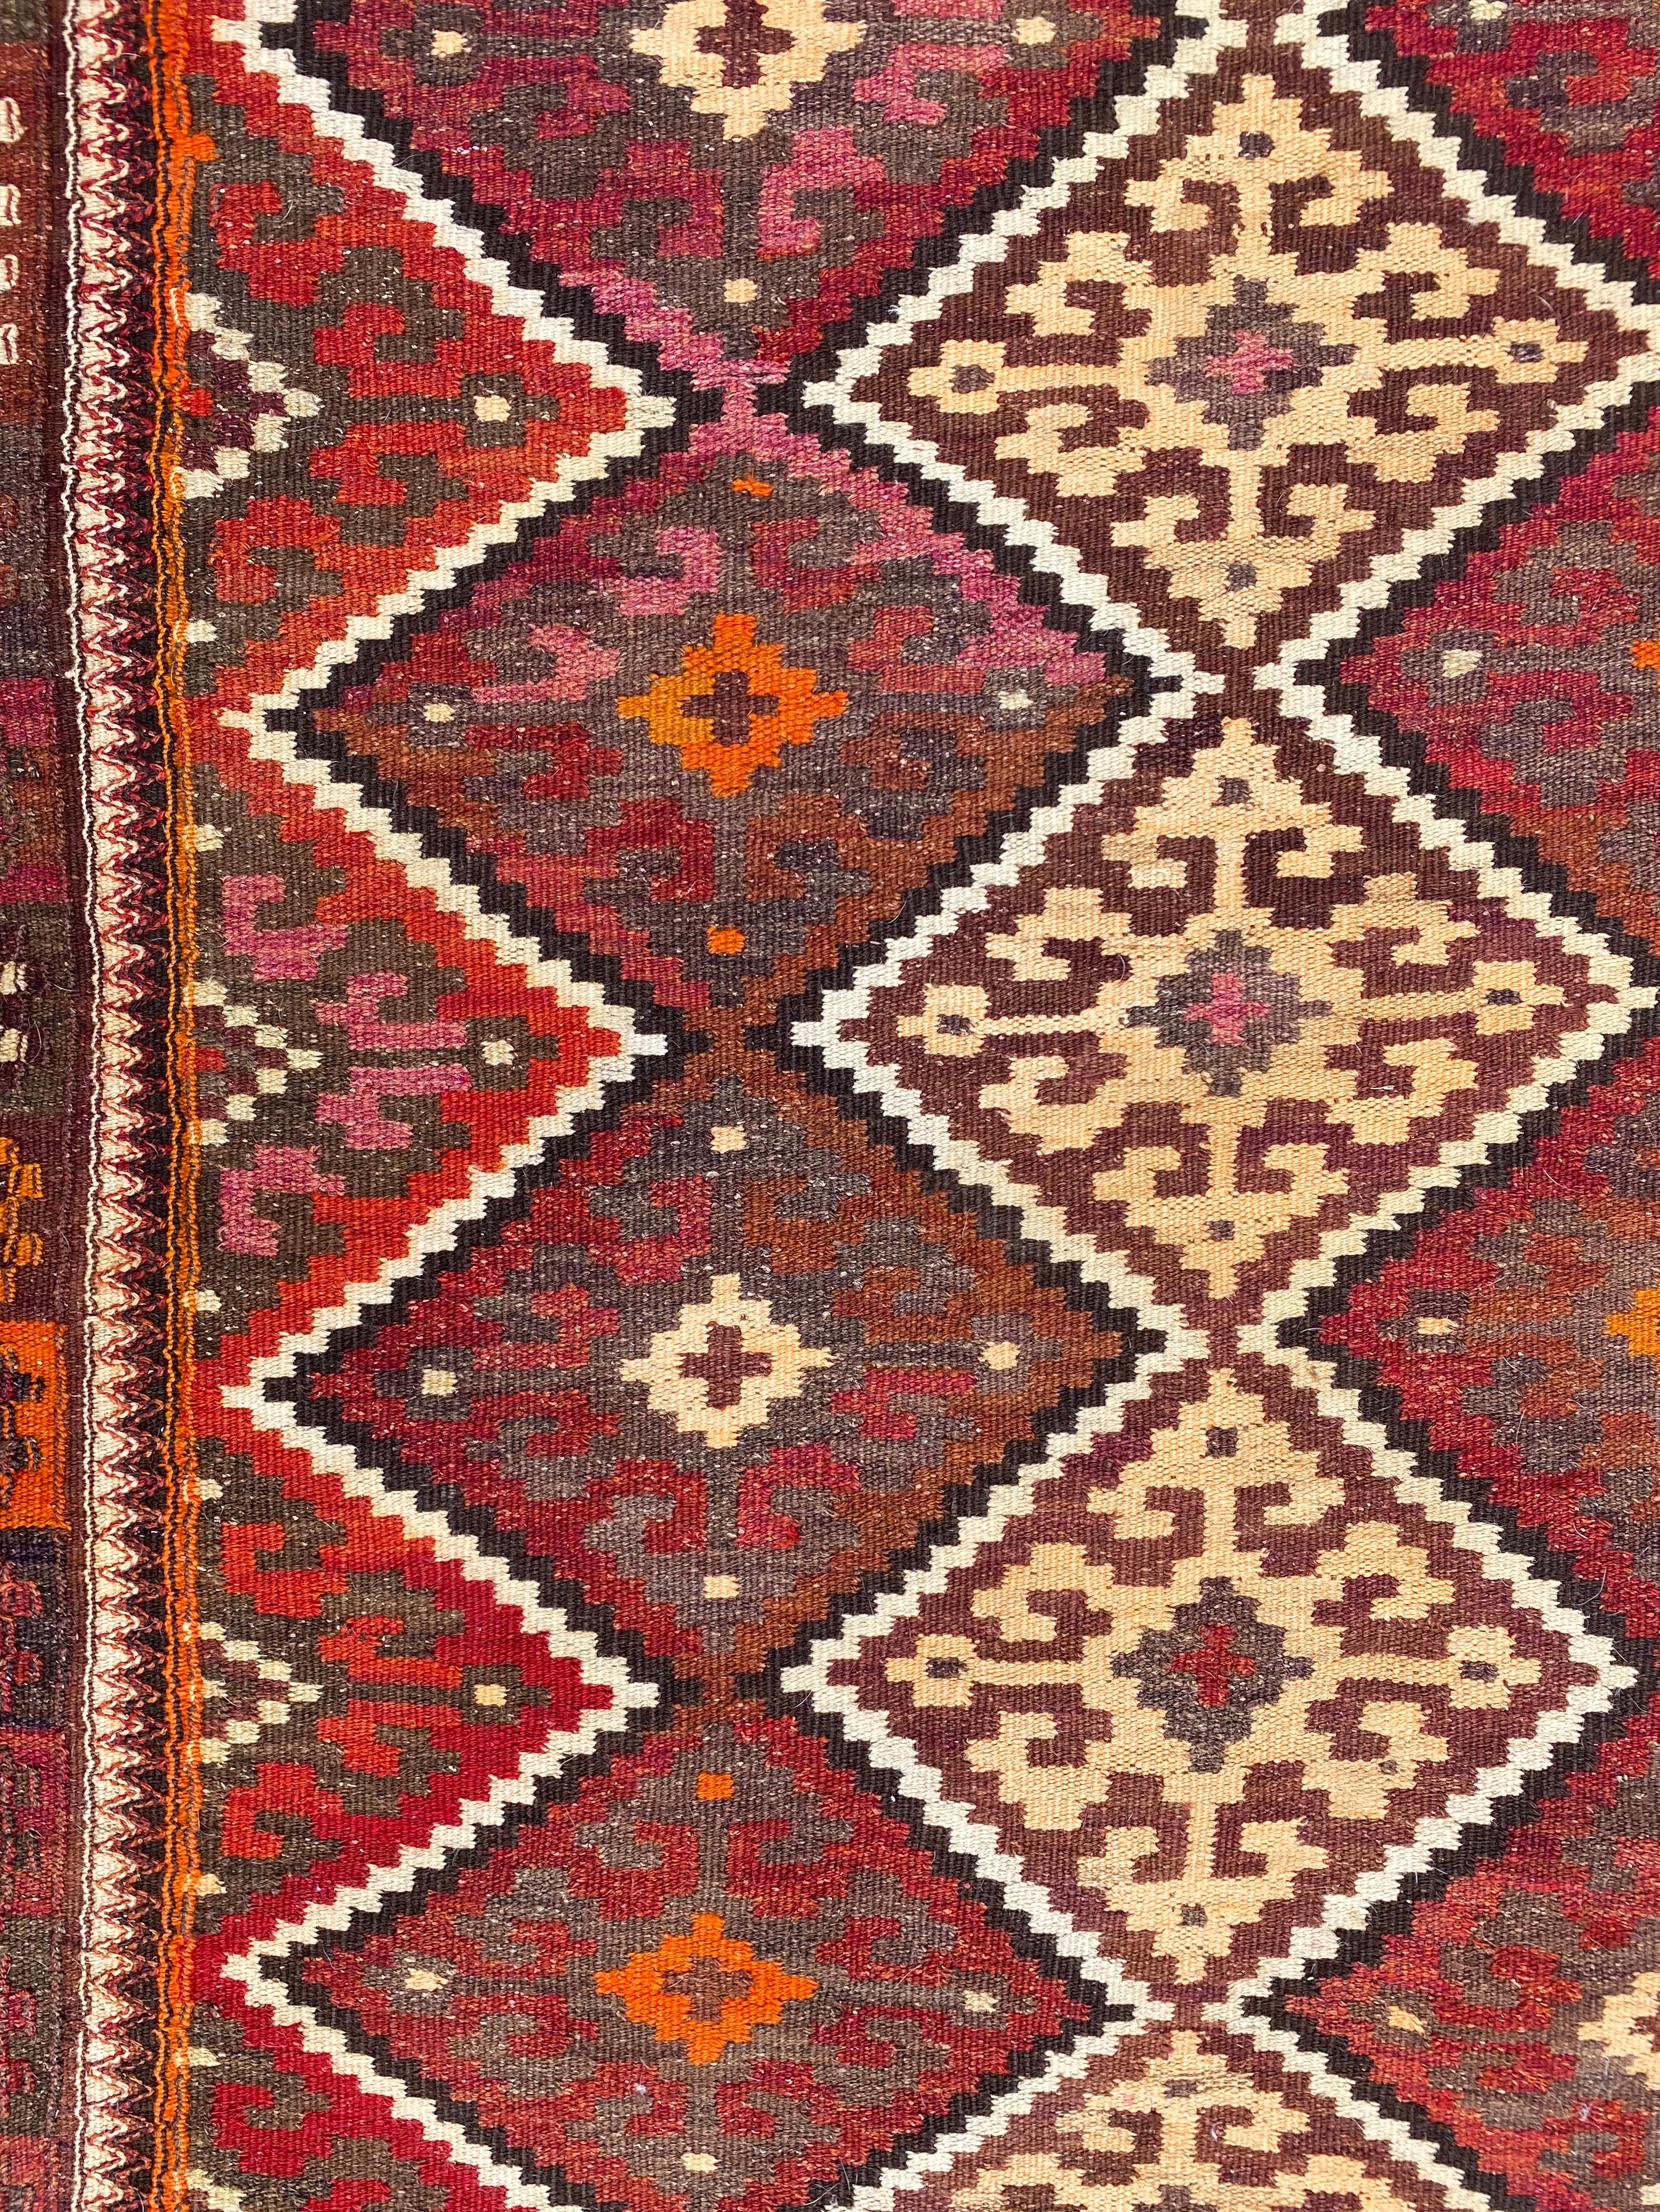 Dieser antike usbekische Tartari-Kilim wurde von den produktiven und vielfältigen usbekischen Webern von Sar-i-Pul hergestellt. Es wurde in einer ausgeprägten Doppelverschlingungstechnik gefertigt und weist ein Gittermuster aus Rauten auf, das acht